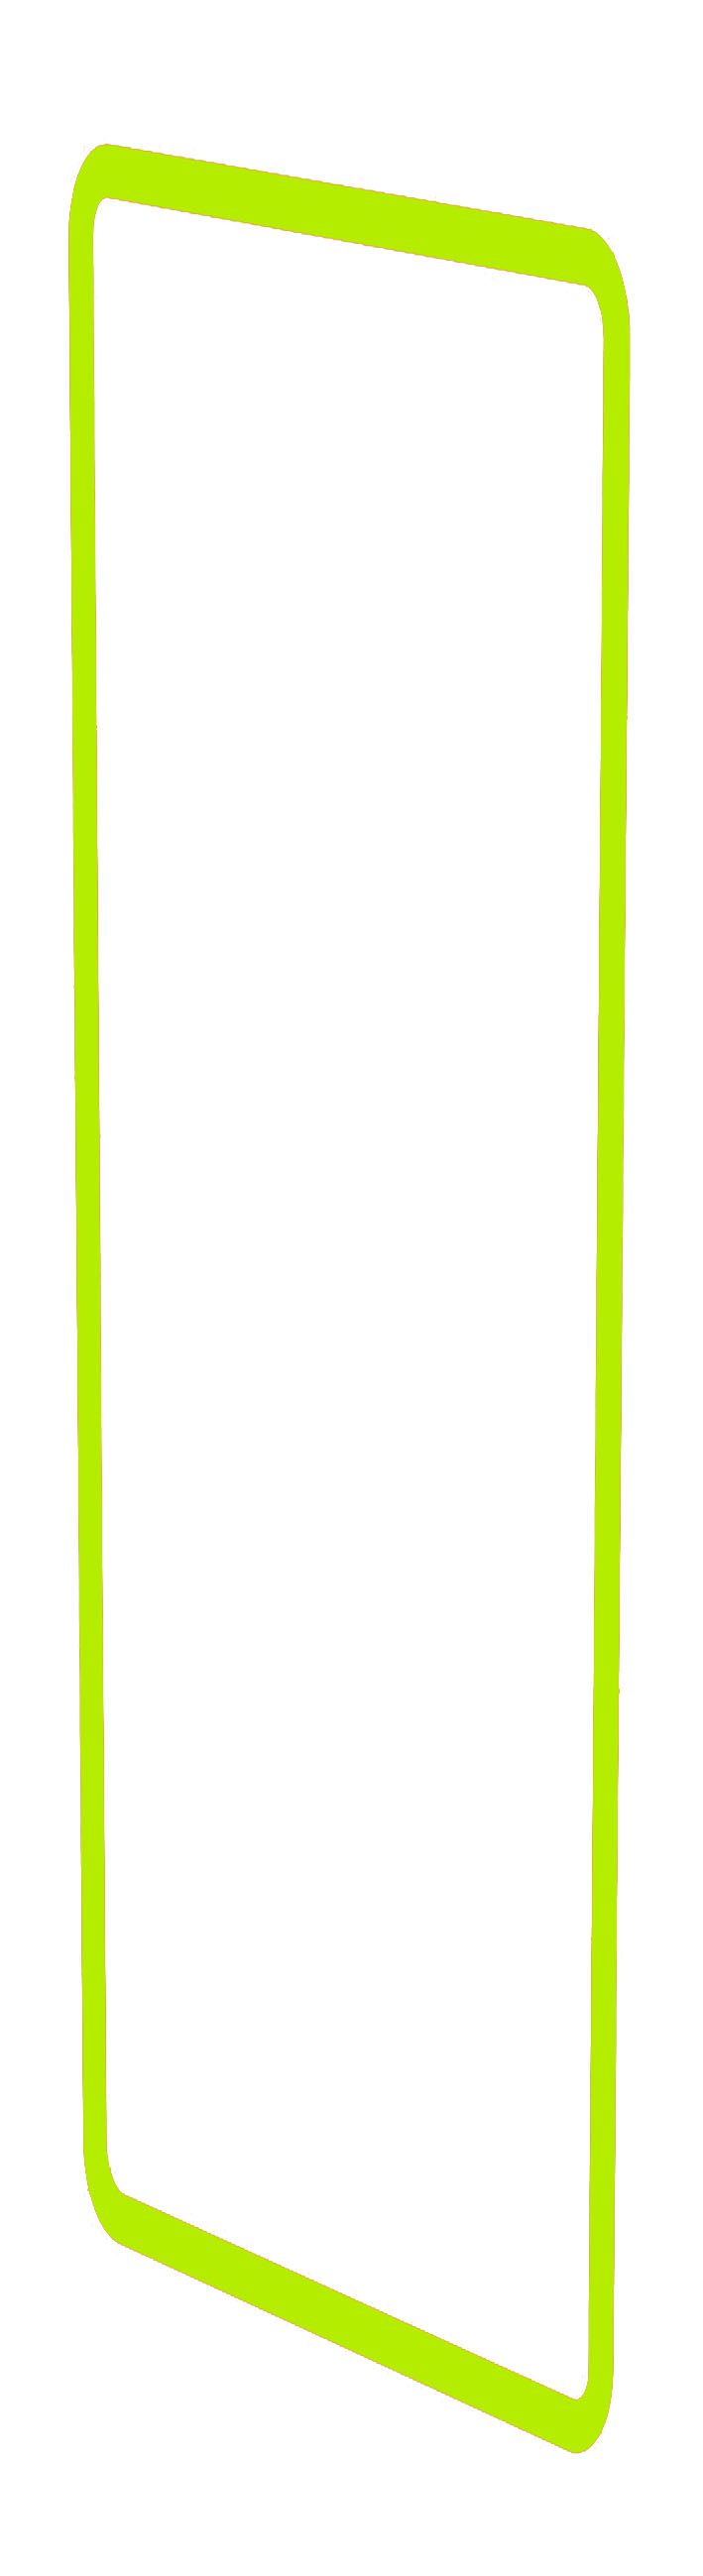 profilo decorativo dim.4x1 priamos giallo/verde fluorescente